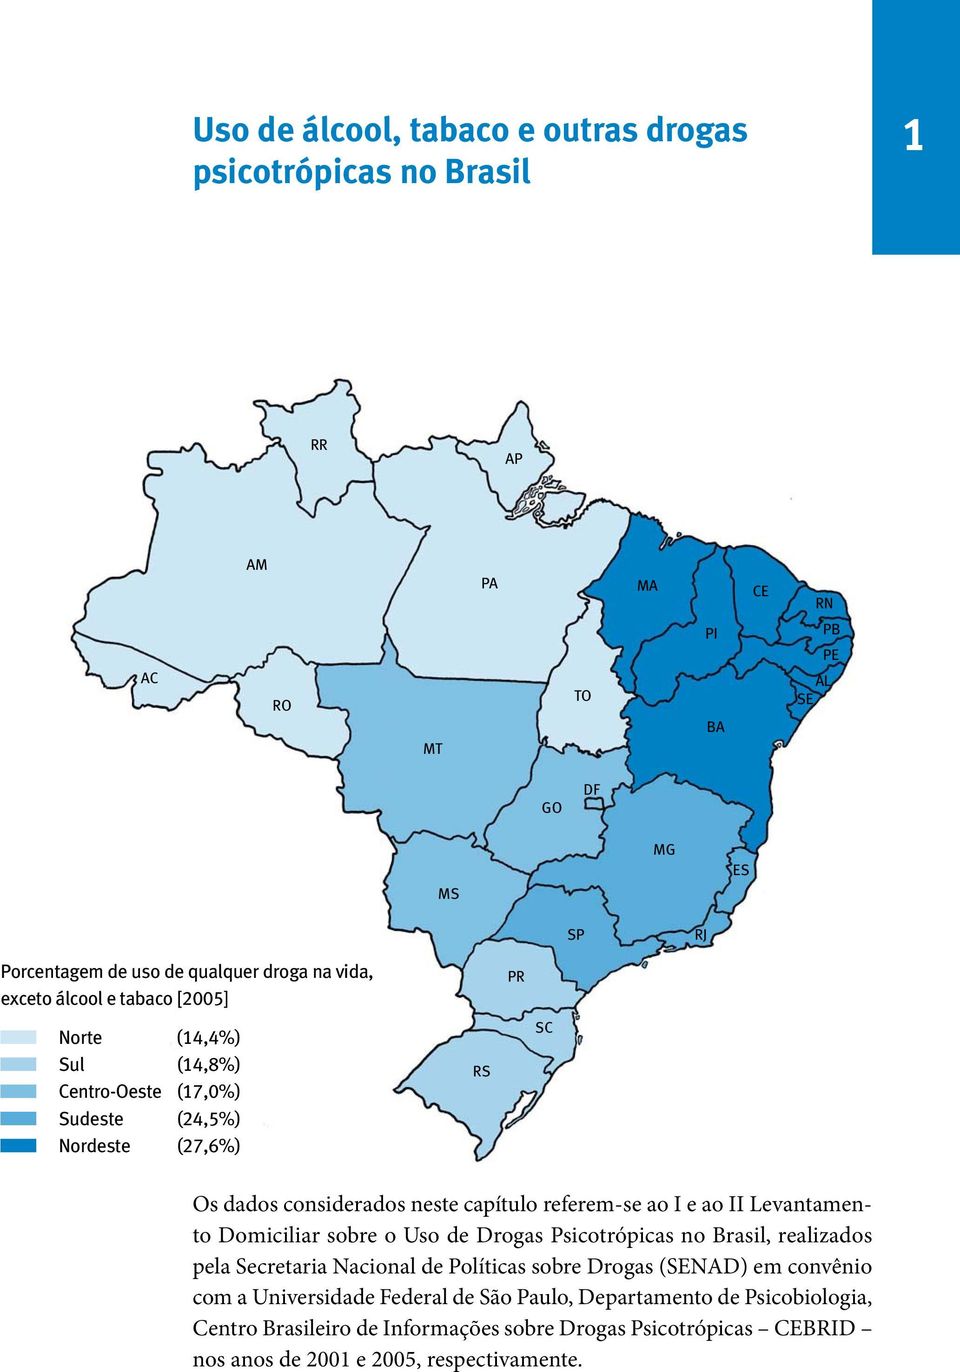 ao I e ao II Levantamento Domiciliar sobre o Uso de Drogas Psicotrópicas no Brasil, realizados pela Secretaria Nacional de Políticas sobre Drogas (SENAD) em convênio